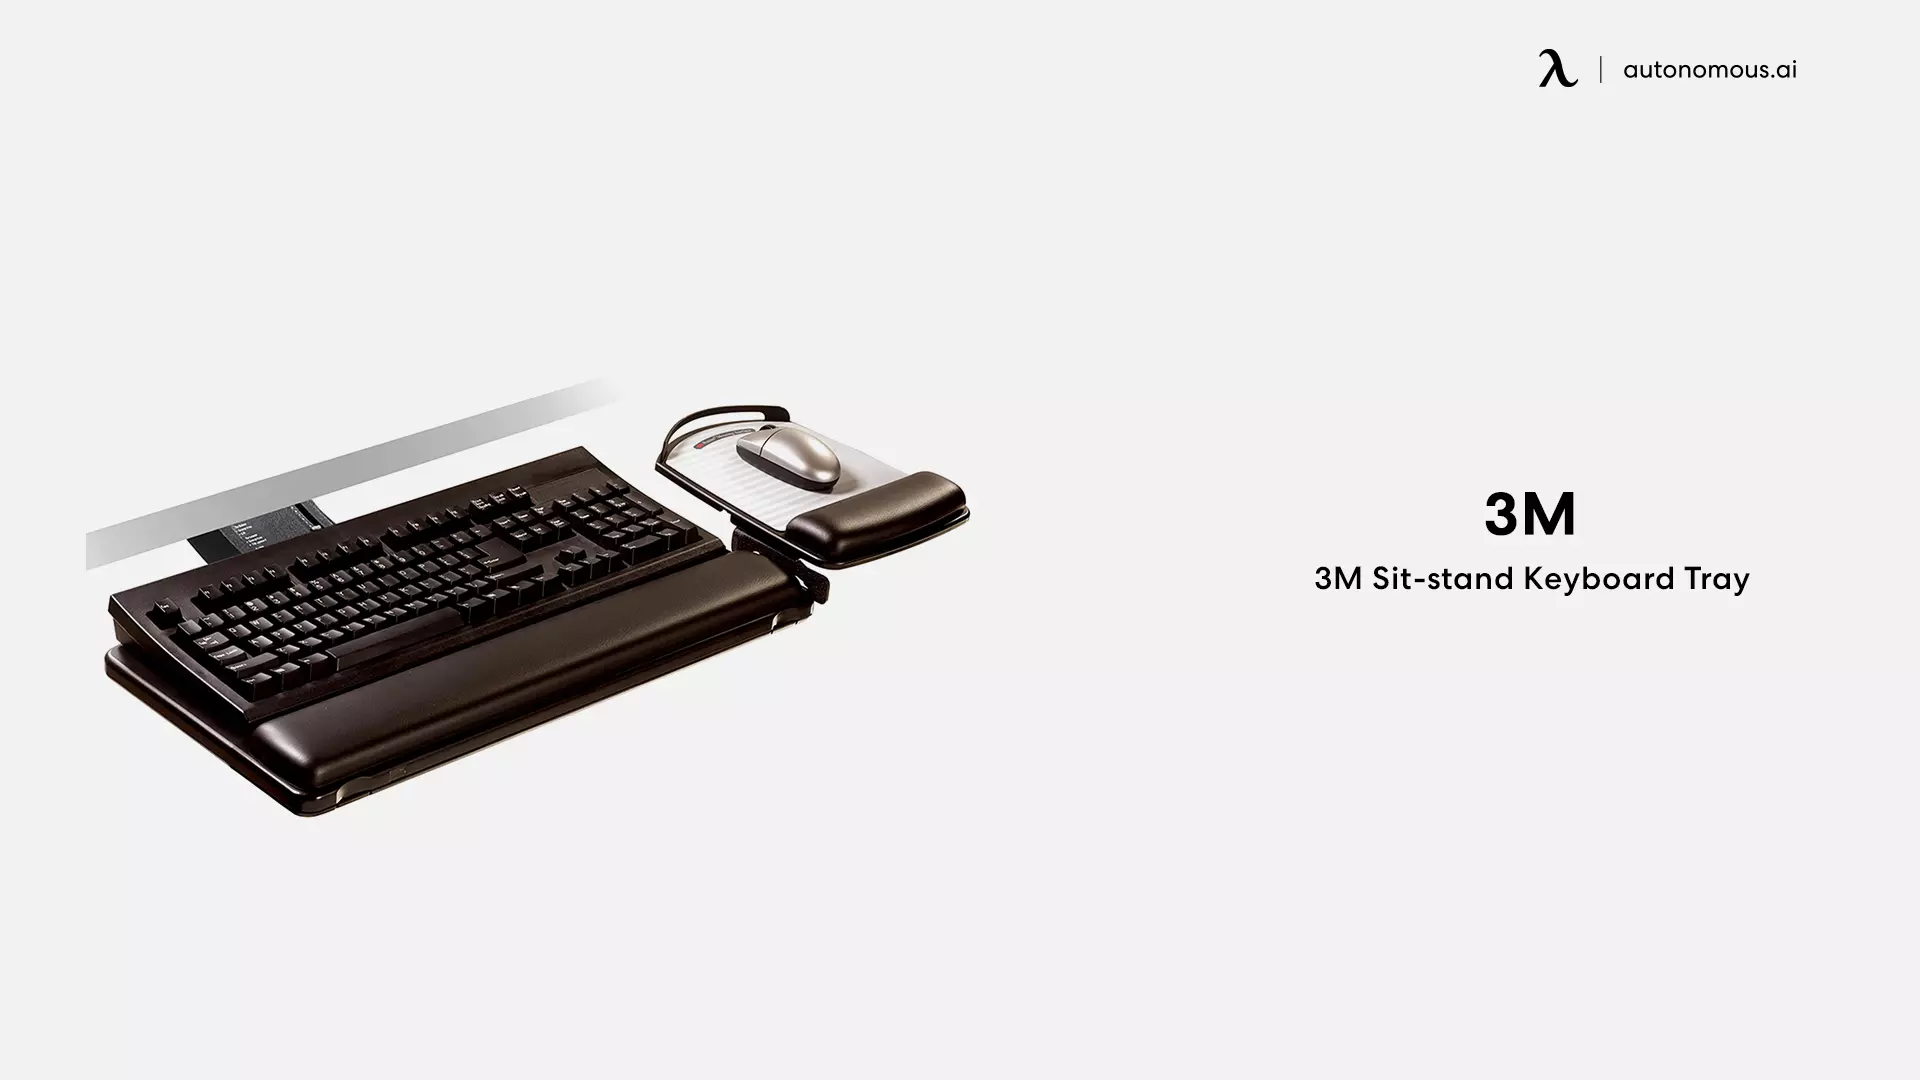 3M Sit-stand Keyboard Tray